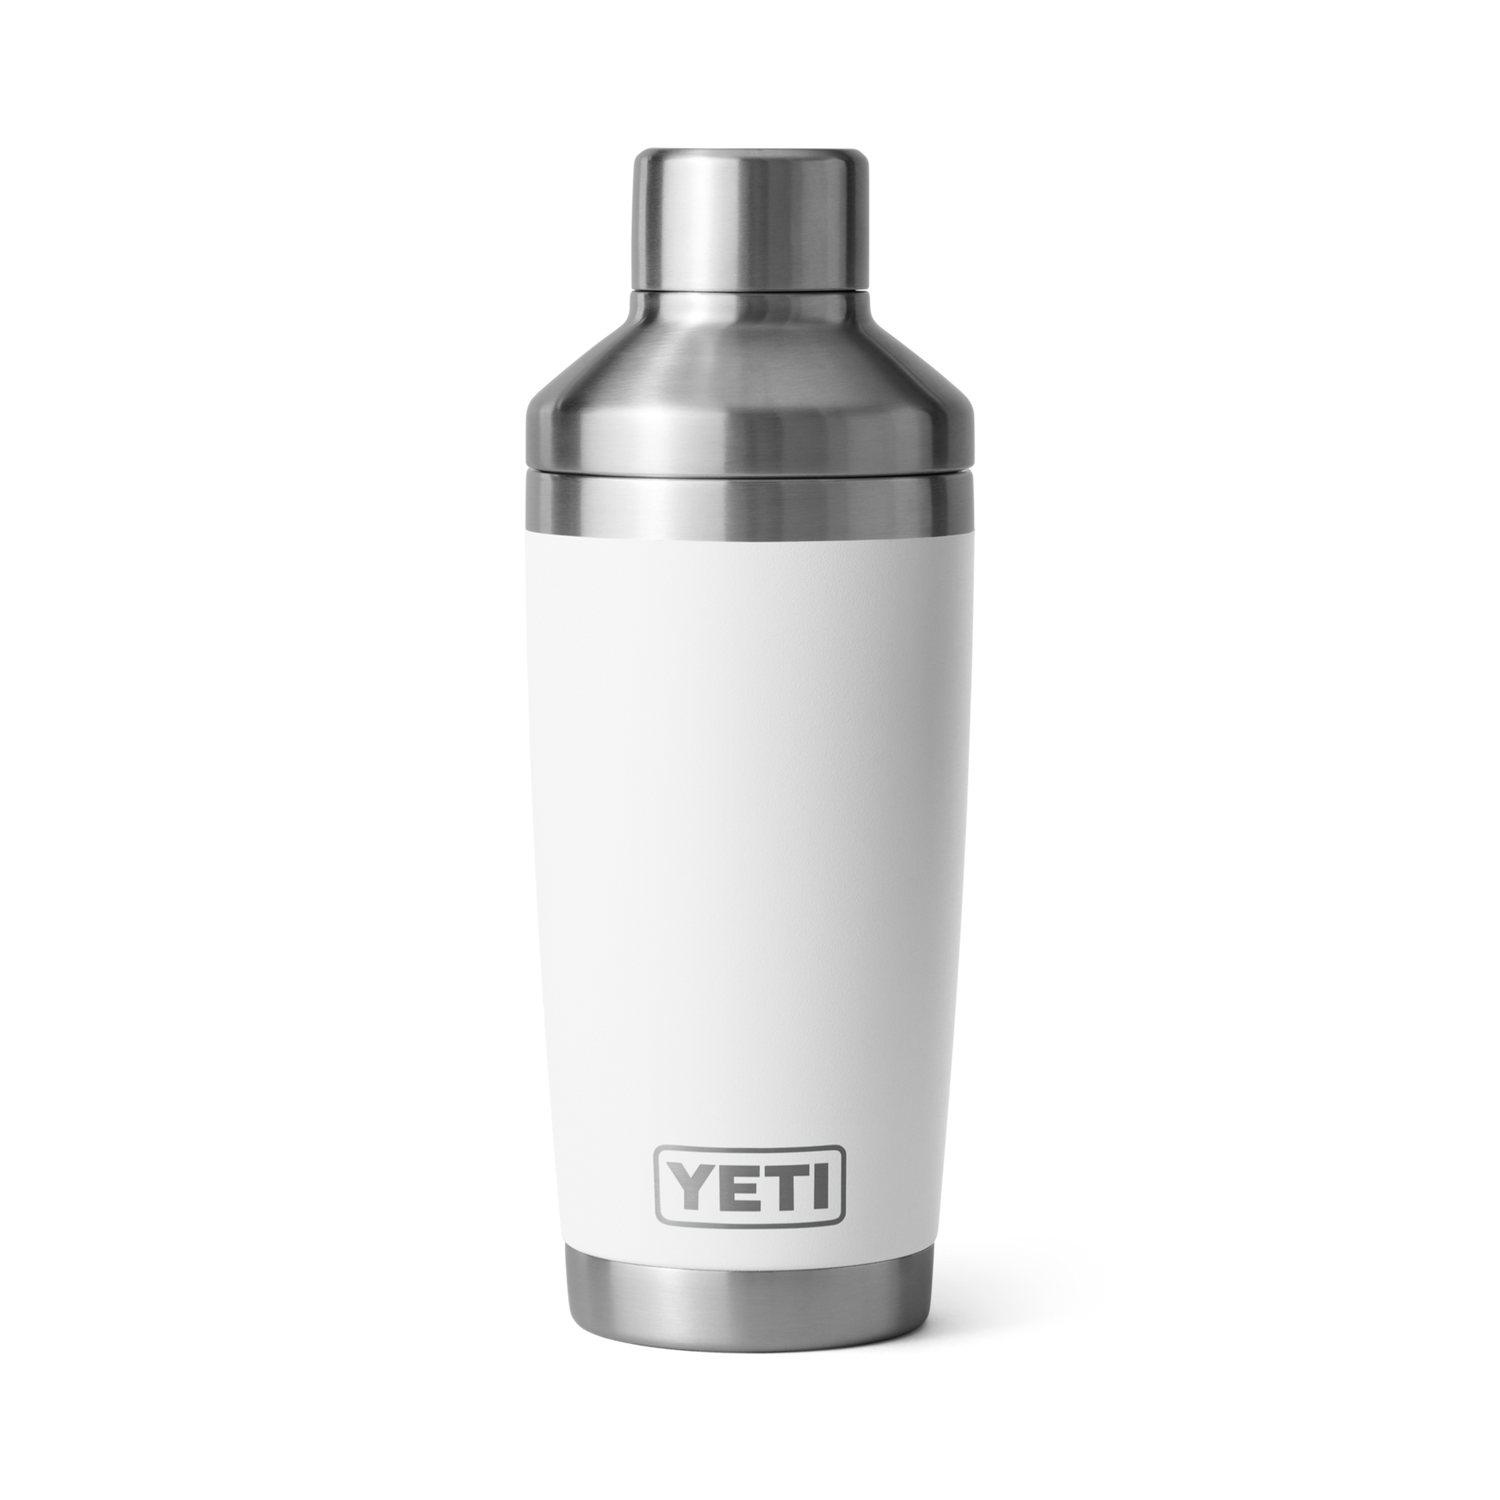 YETI Rambler 20 oz. Vacuum Insulated Cocktail Shaker